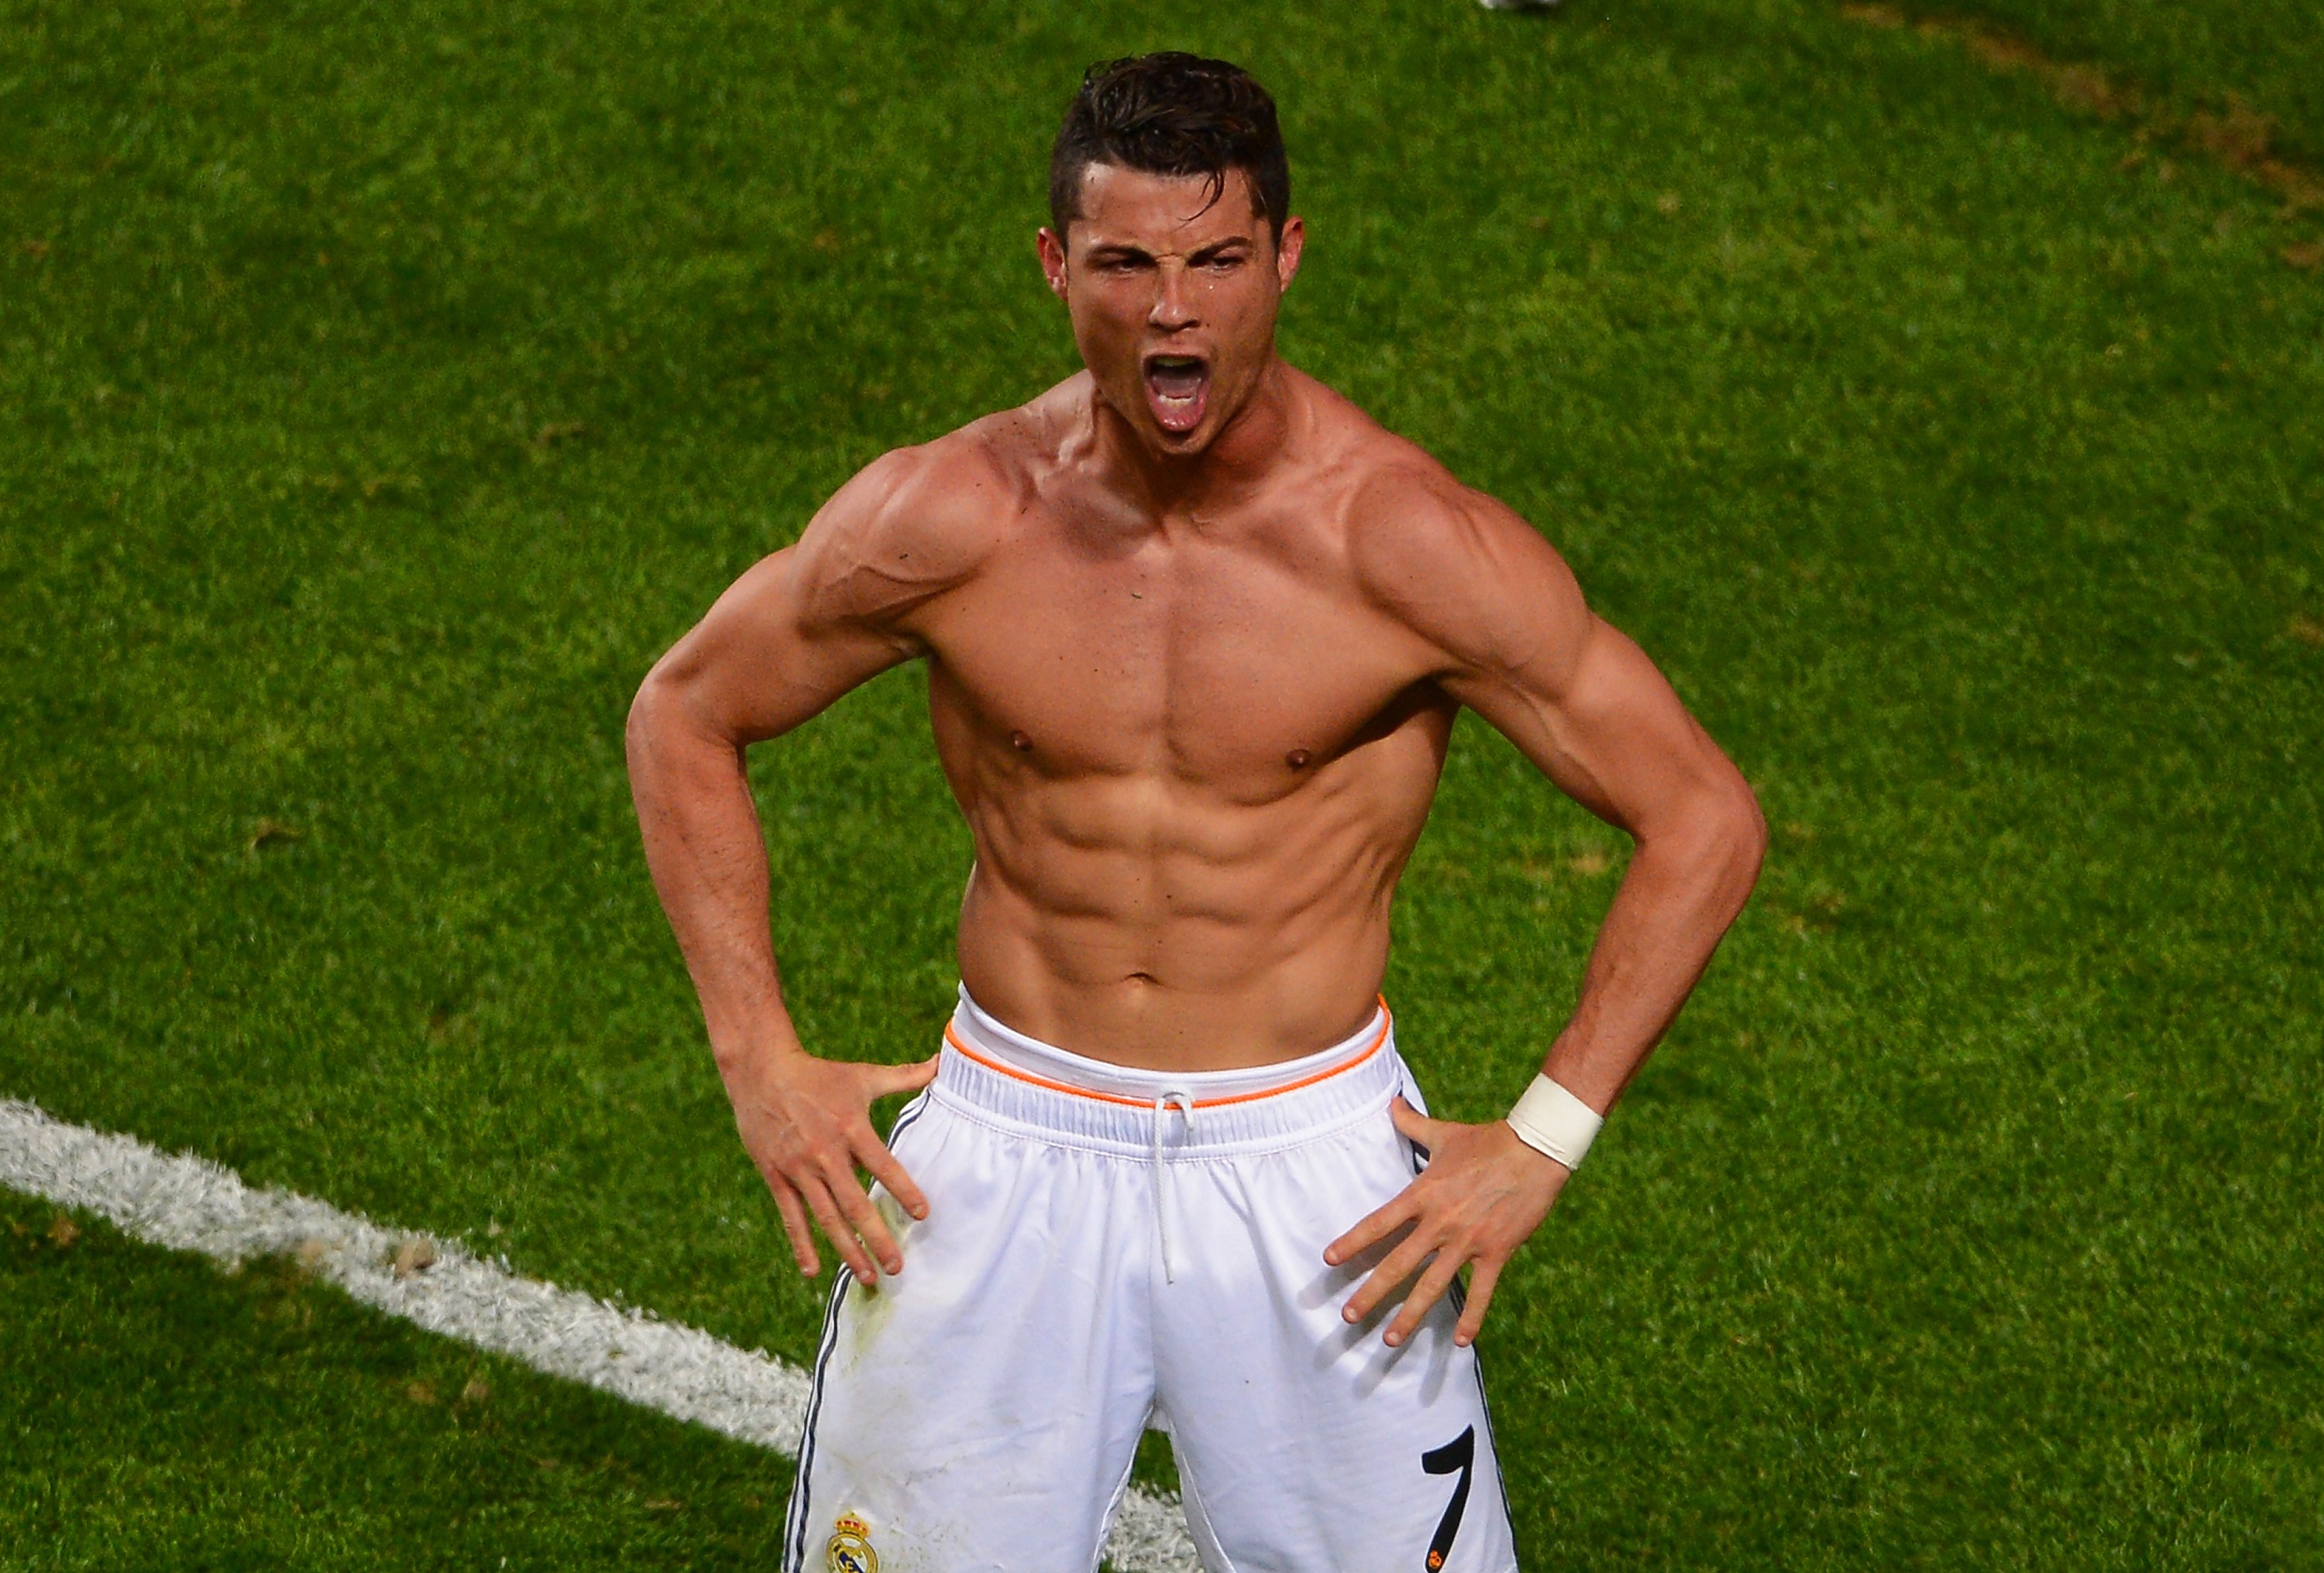 Nem mesmo a ótima forma física afastou Cristiano Ronaldo das lesões (Foto: Getty Images)